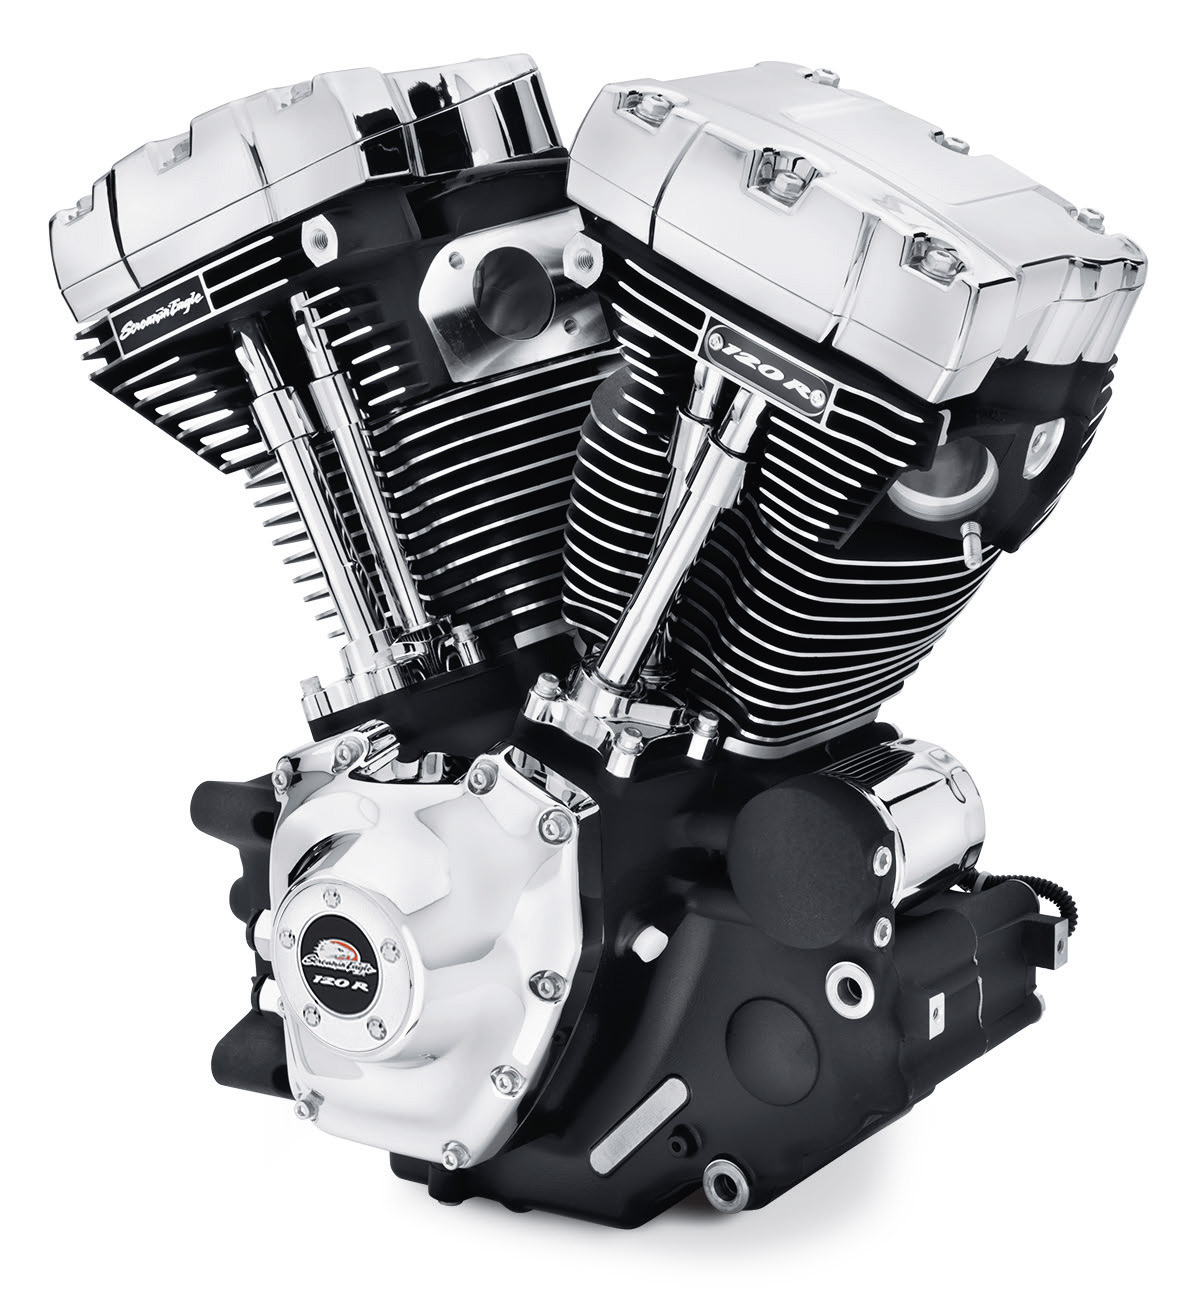 Мотор байка. Harley Davidson 107 мотор. Двигатель харлелевисон. Harley Davidson 114 мотор. 105 Мотор Харлей Дэвидсон.